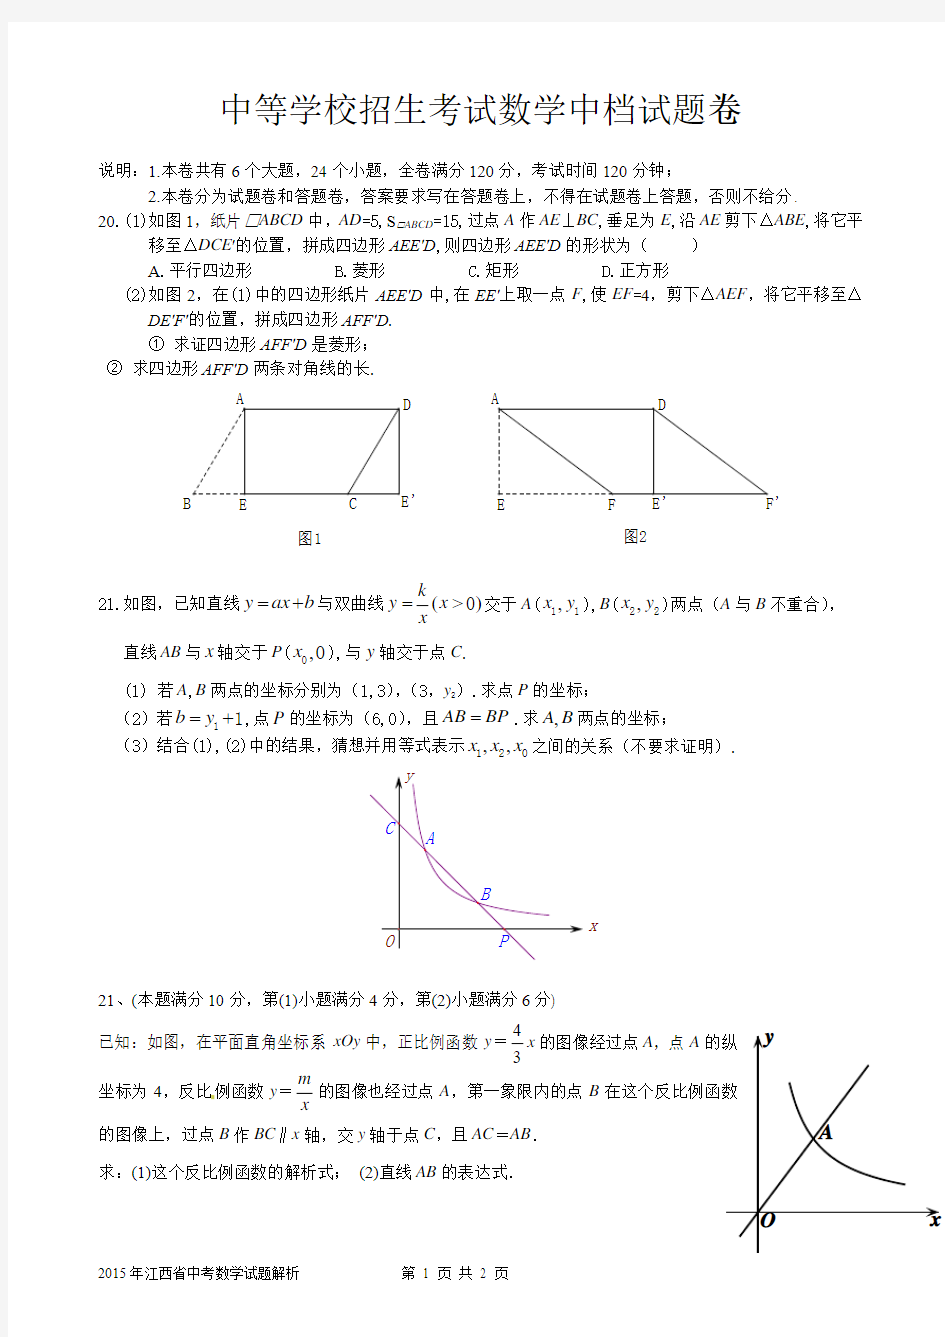 中等学校招生考试数学中档试题卷1(函数)